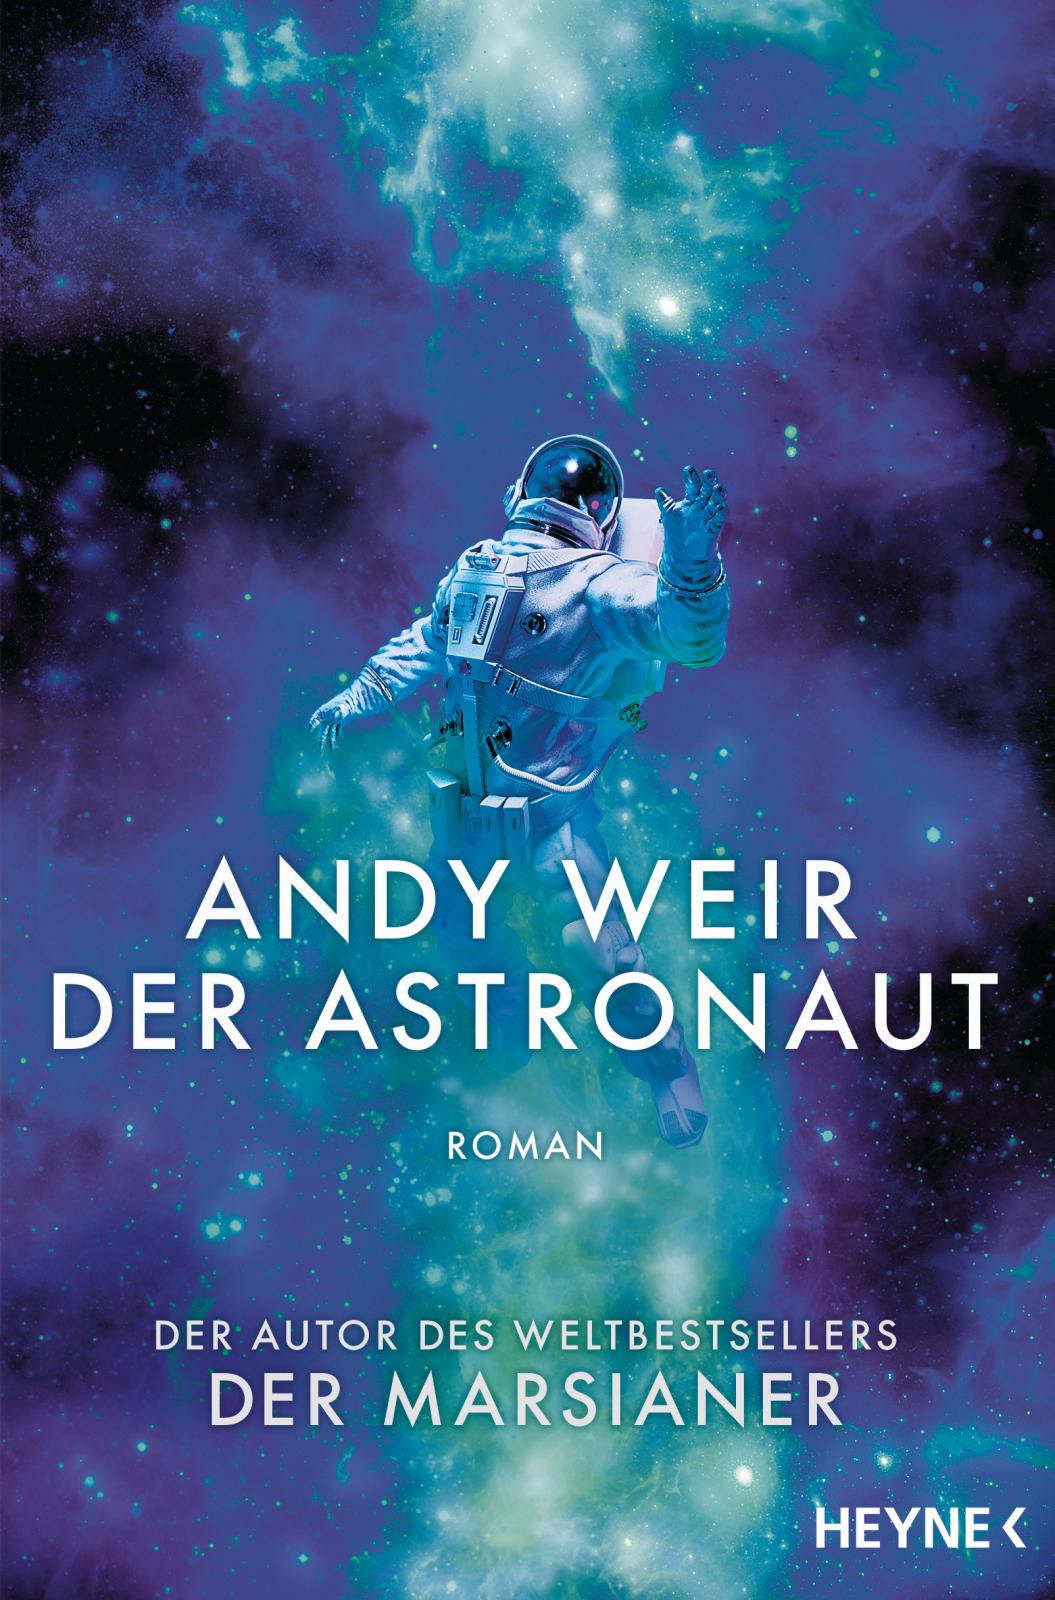 Andy Weir: Der Astronaut